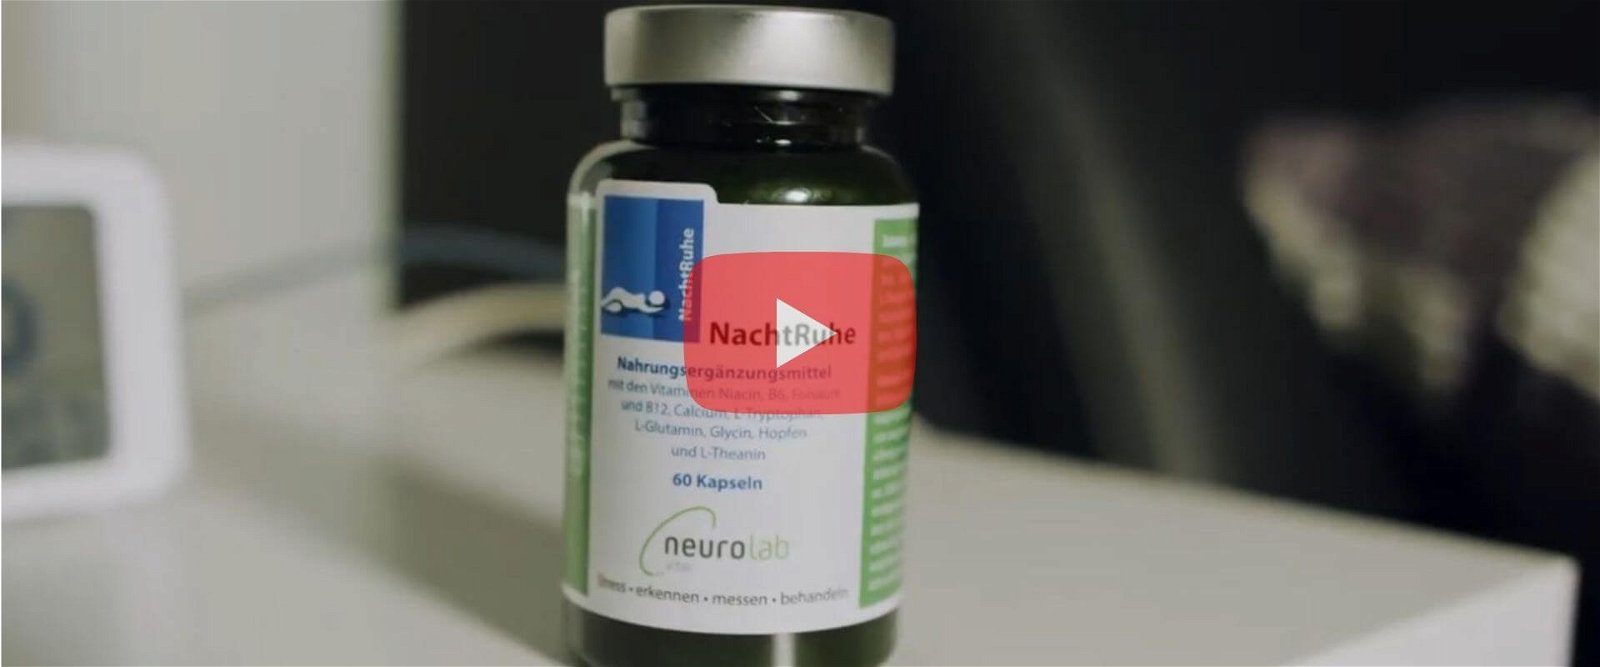 Neurolab Vital NachtRuhe - besser einschlafen mit Melatonin, Aminosäuren, Hopfen und Tri-B-Komplex